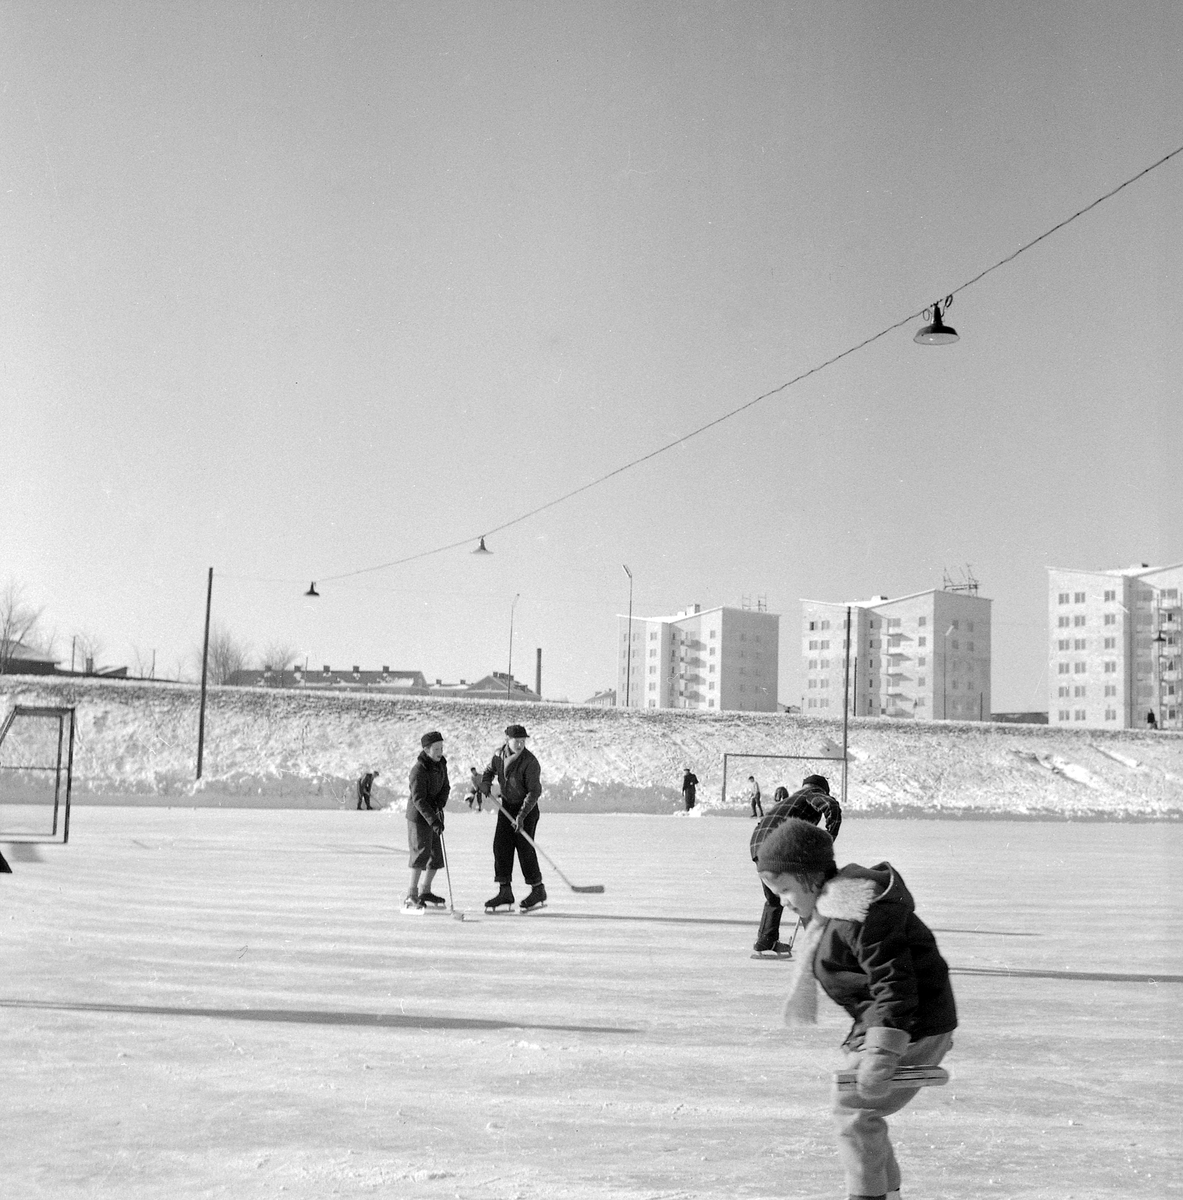 Serie bilder från Lingvallen i Linköping vintern 1955. Anläggningen skapades i början av decenniet, inte minst genom stora, frivilliga insatser av medlemmar i idrottsföreningen Gottfridsbergs IF. Tillkomsten av Lingvallen innebar bland annat att föreningen återupptog bandy på sitt program. I bakgrunden färdigställts punkthusen utmed Åbylundsgatan.